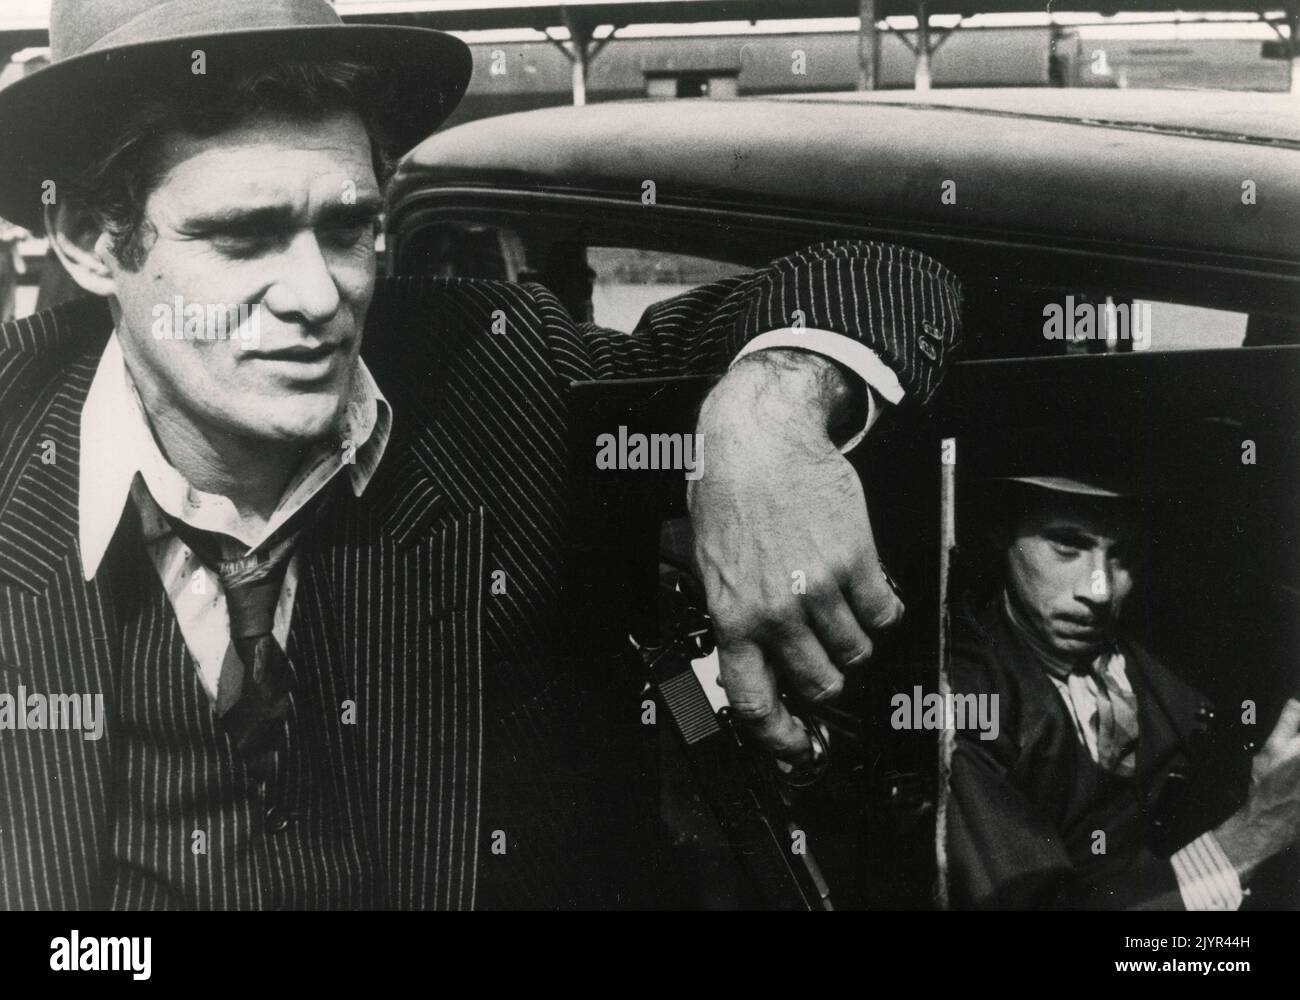 Attori americani Bo Hopkins e Robert Walden nel film The Kansas City Massacre, USA 1975 Foto Stock